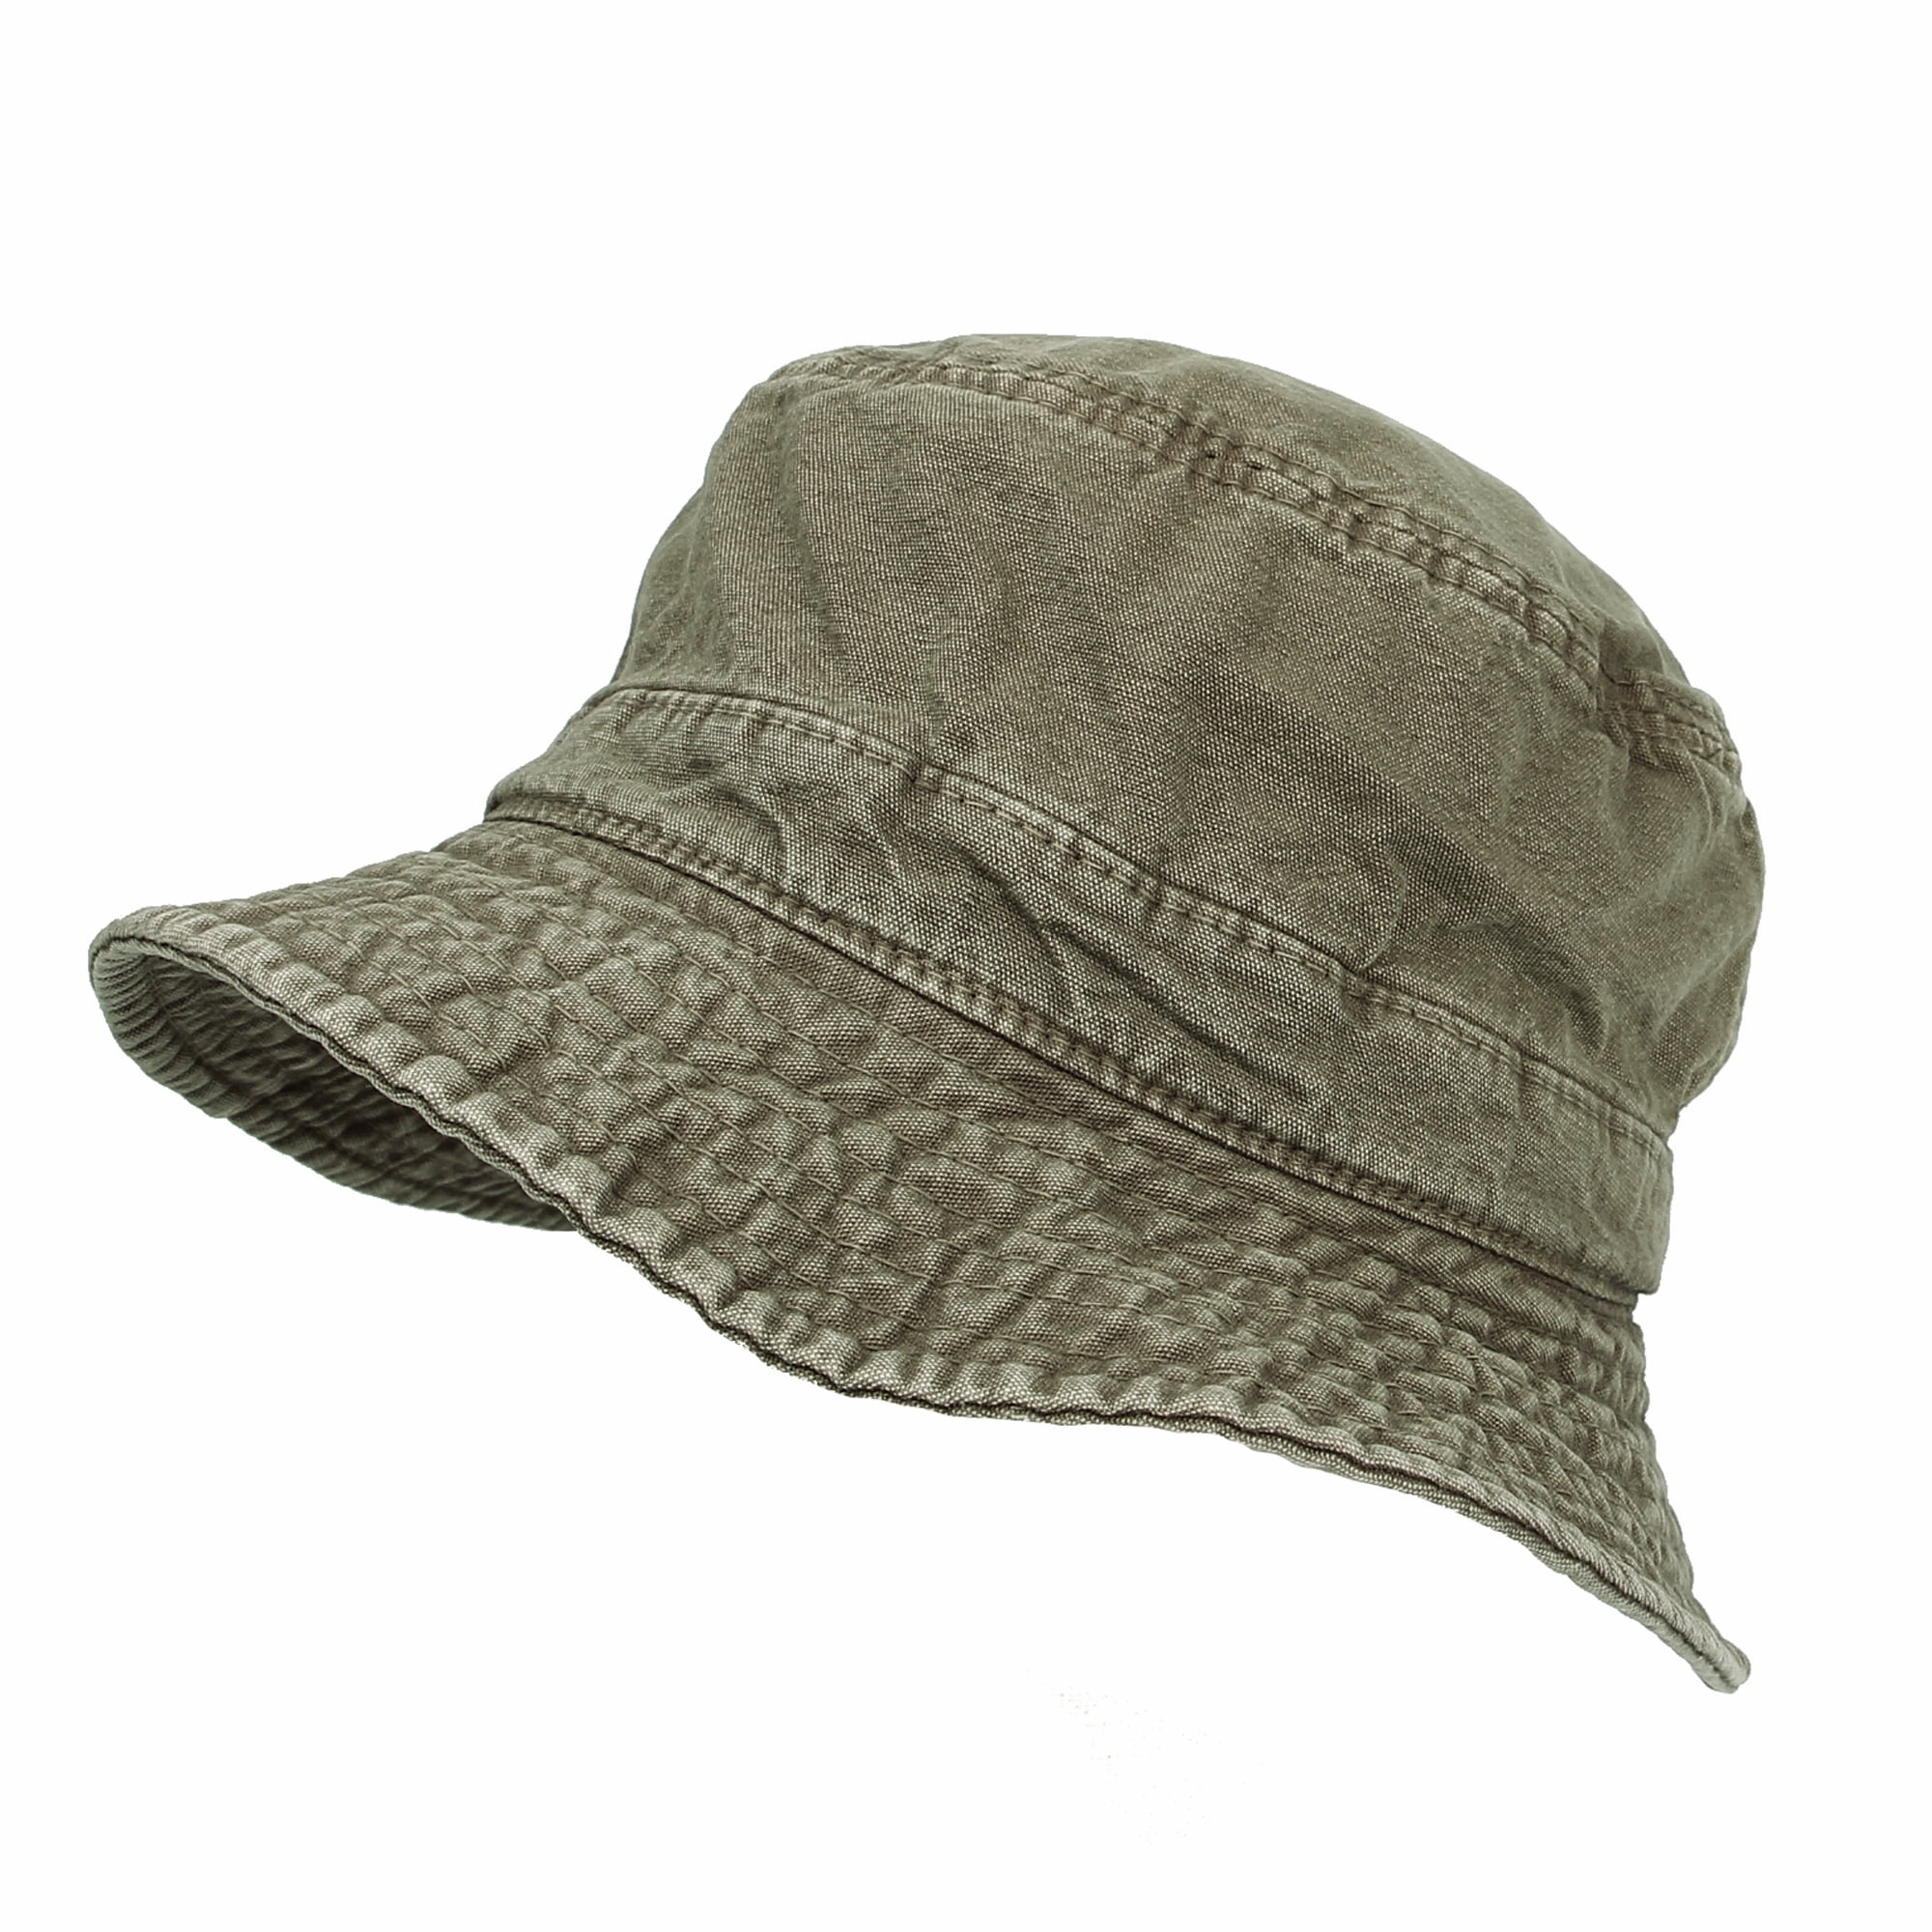 Bucket Hat Cap Fishing Boonie Brim Olive Safari Summer Unisex 100%Cotton Fishing 